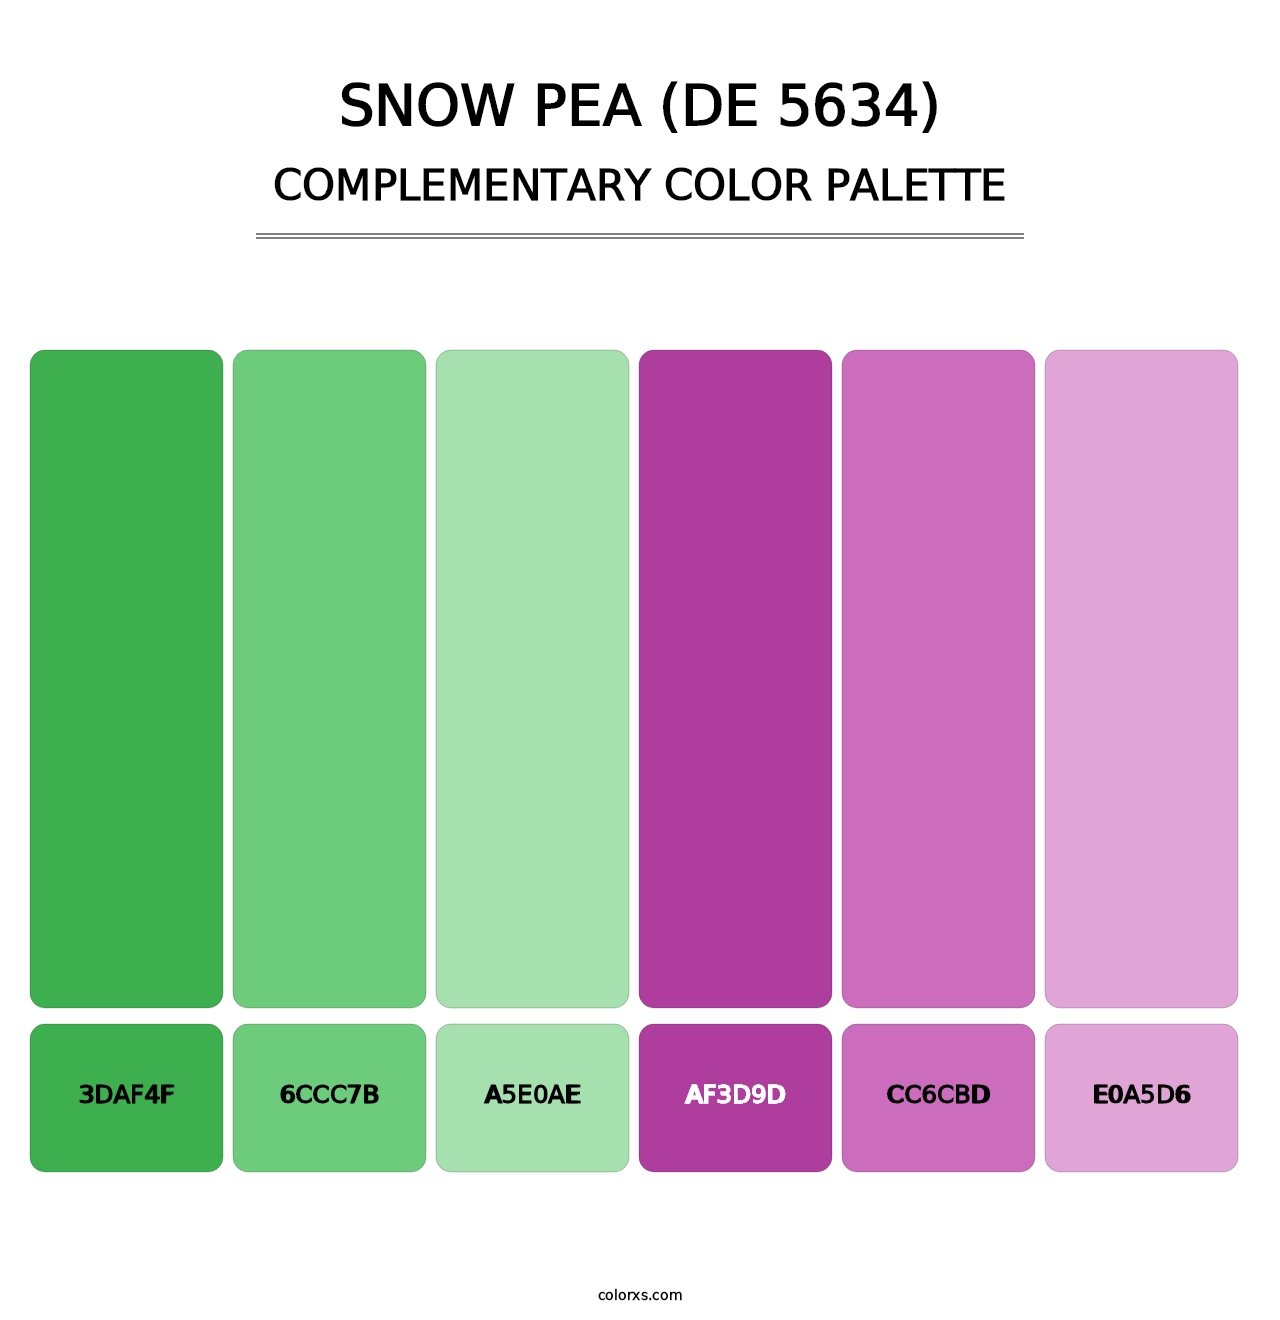 Snow Pea (DE 5634) - Complementary Color Palette